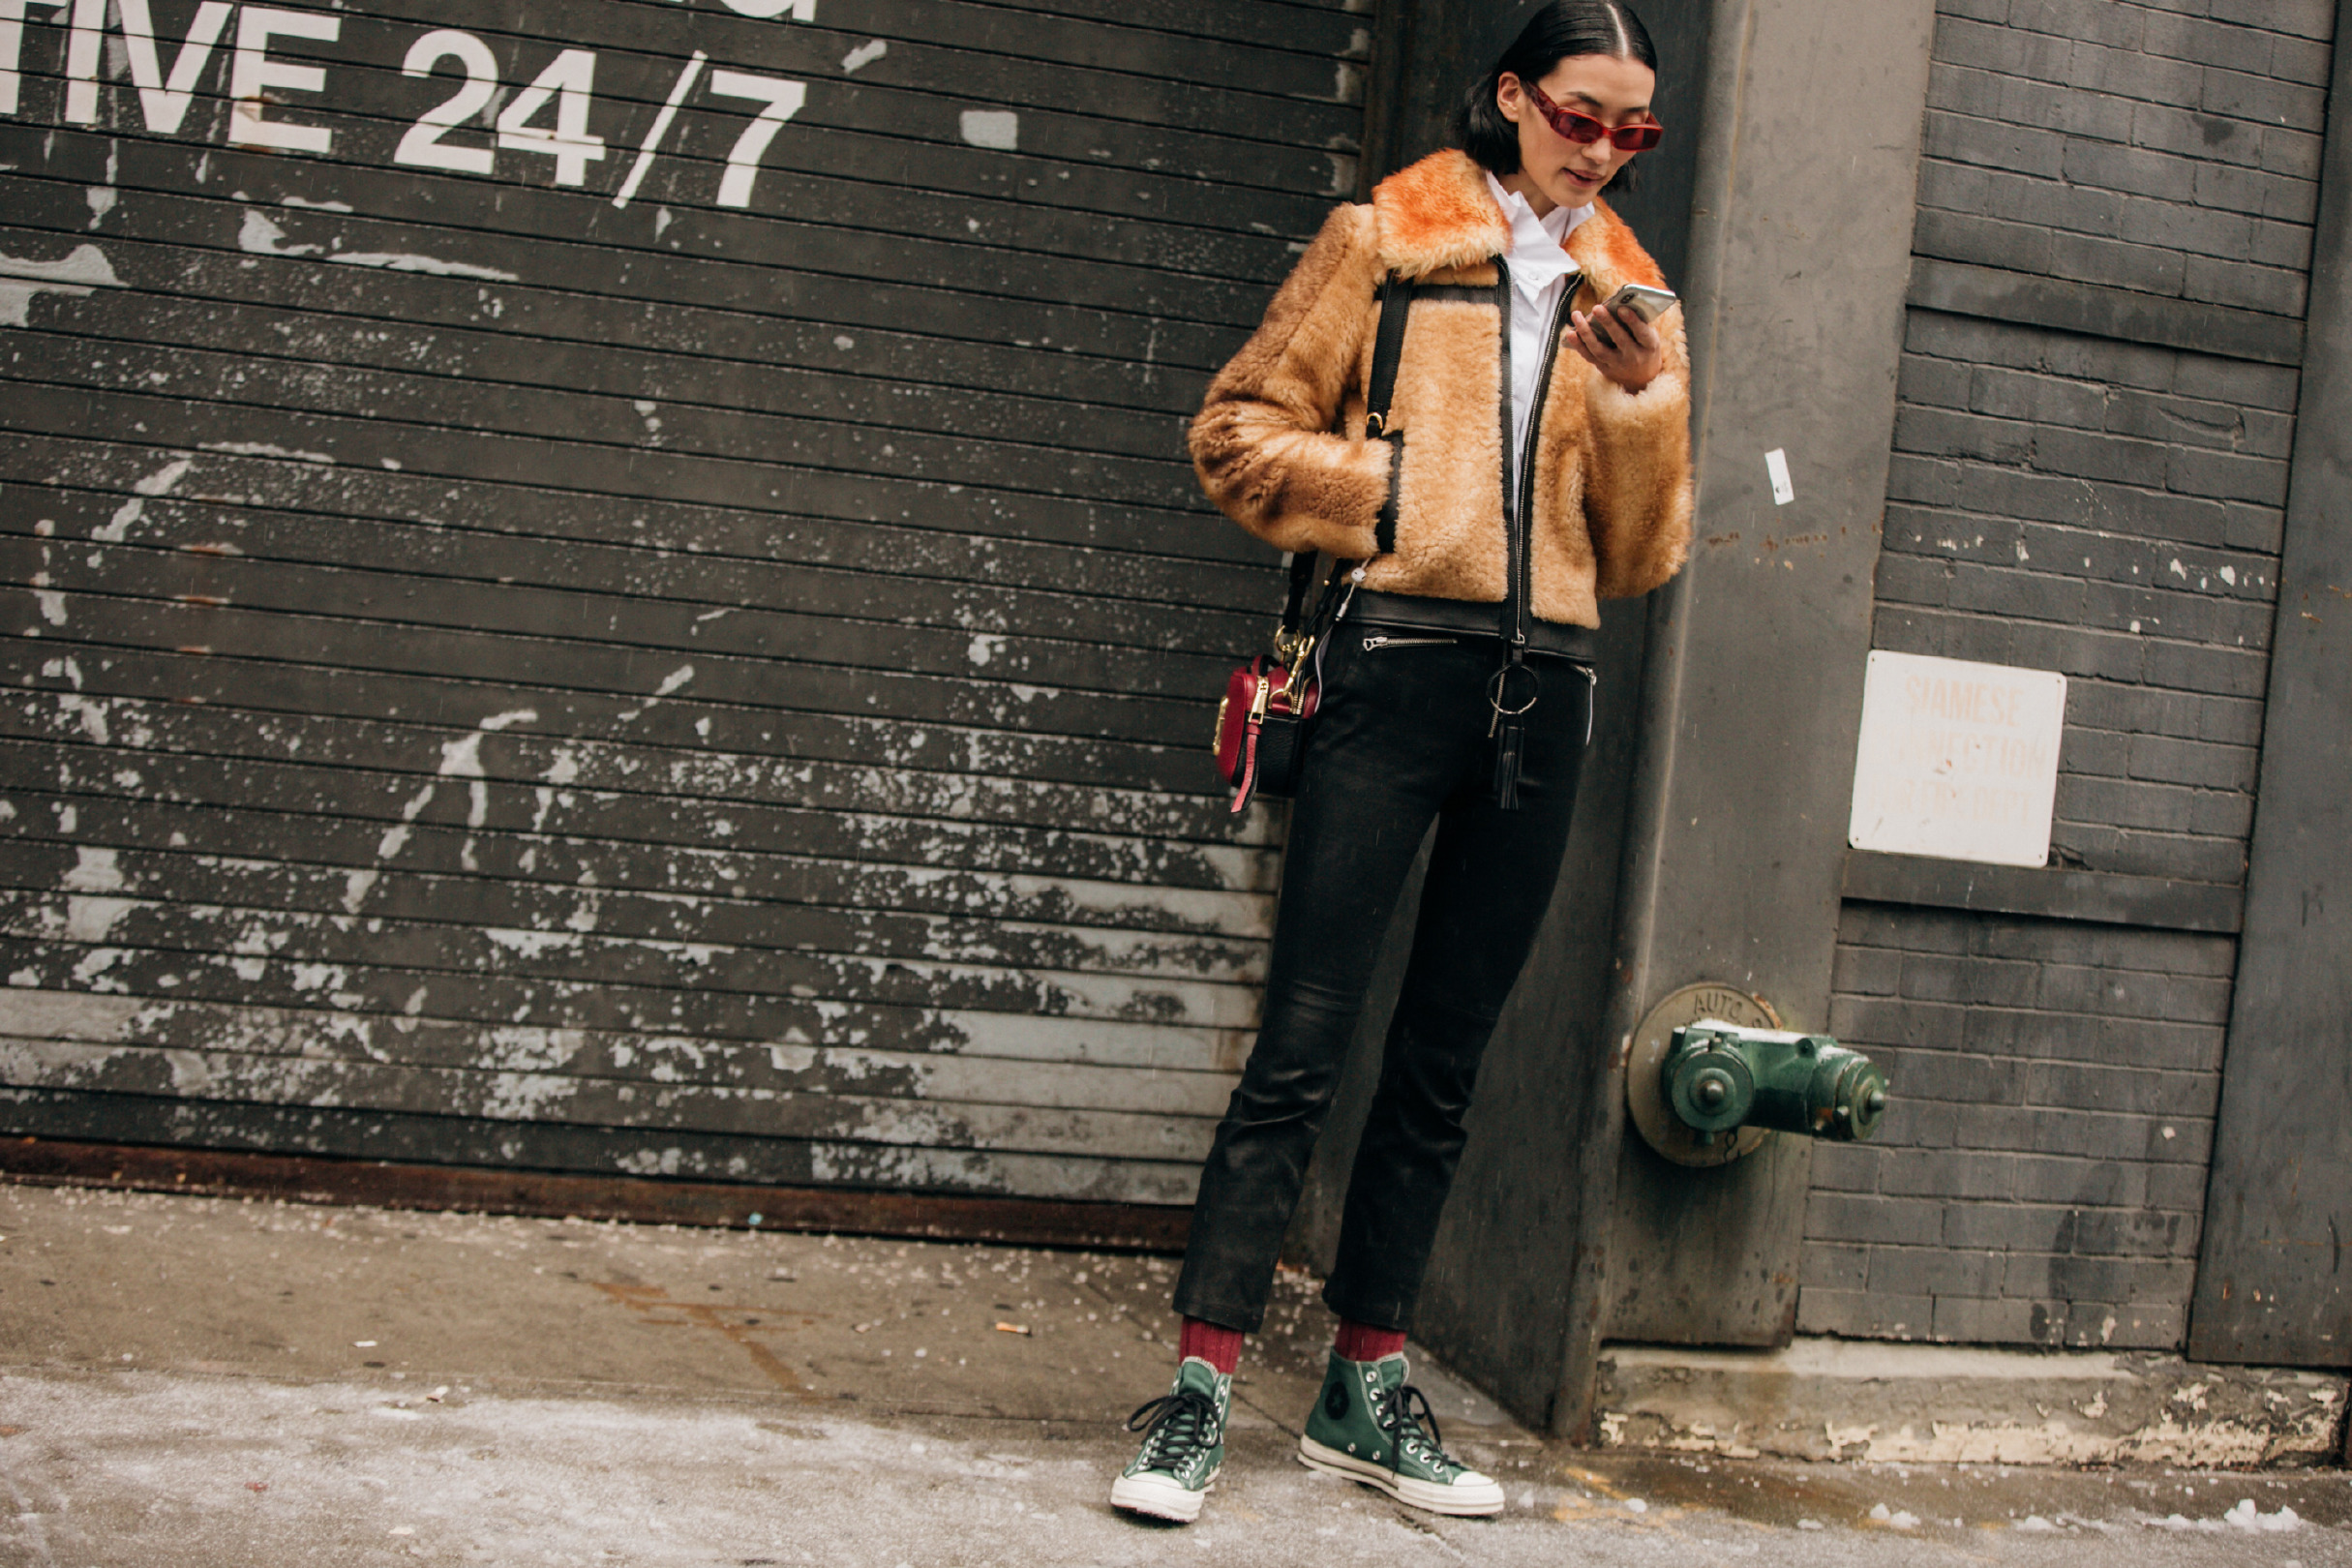 Sokak Stili: 2019-20 Sonbahar/Kış New York Moda Haftası 6. Gün